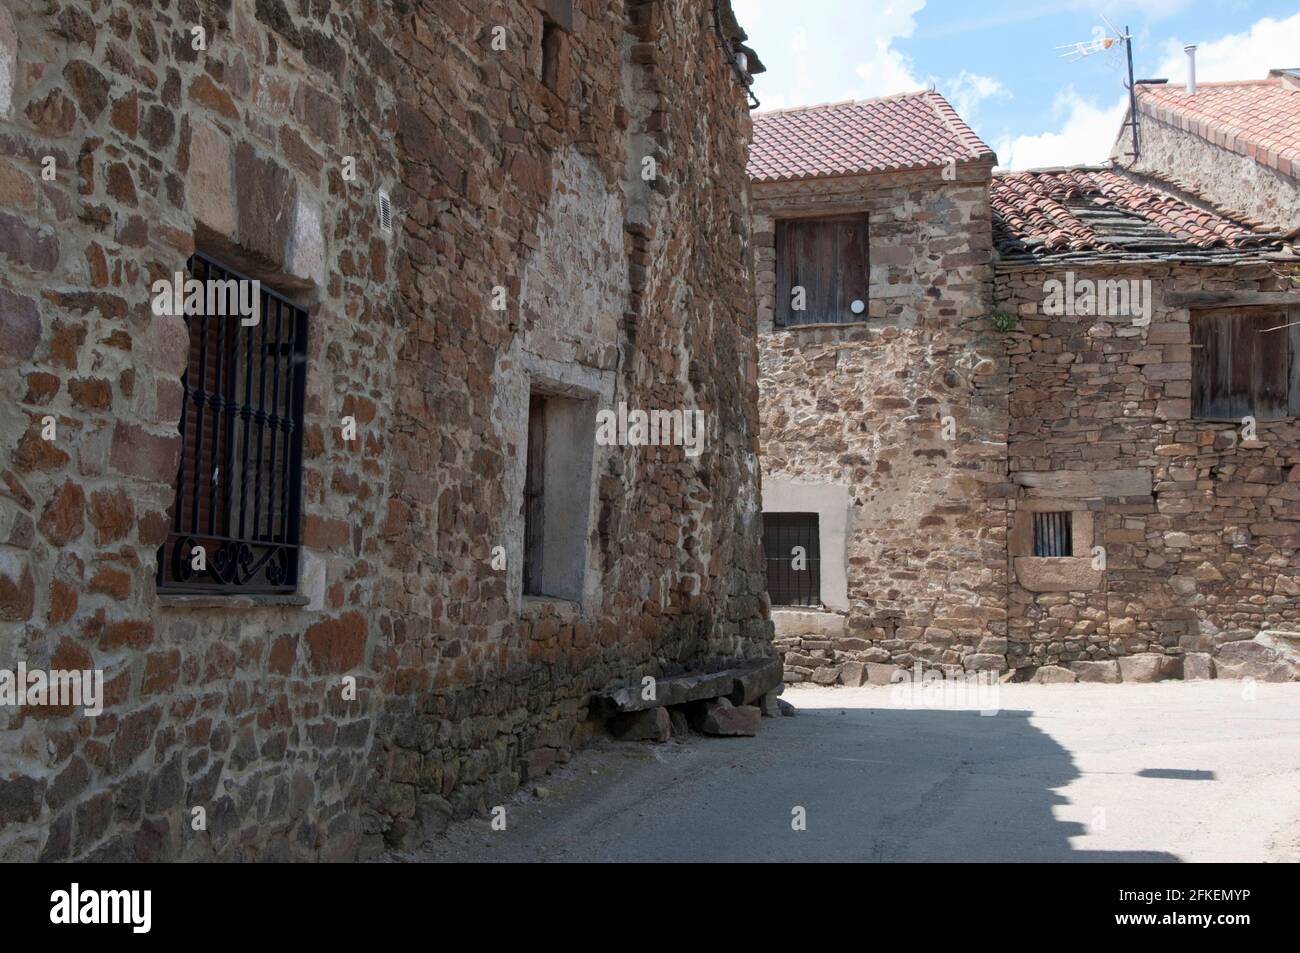 Via vuota in un villaggio rurale. Con case tradizionali in pietra. Soria, Castiglia, Spagna Foto Stock